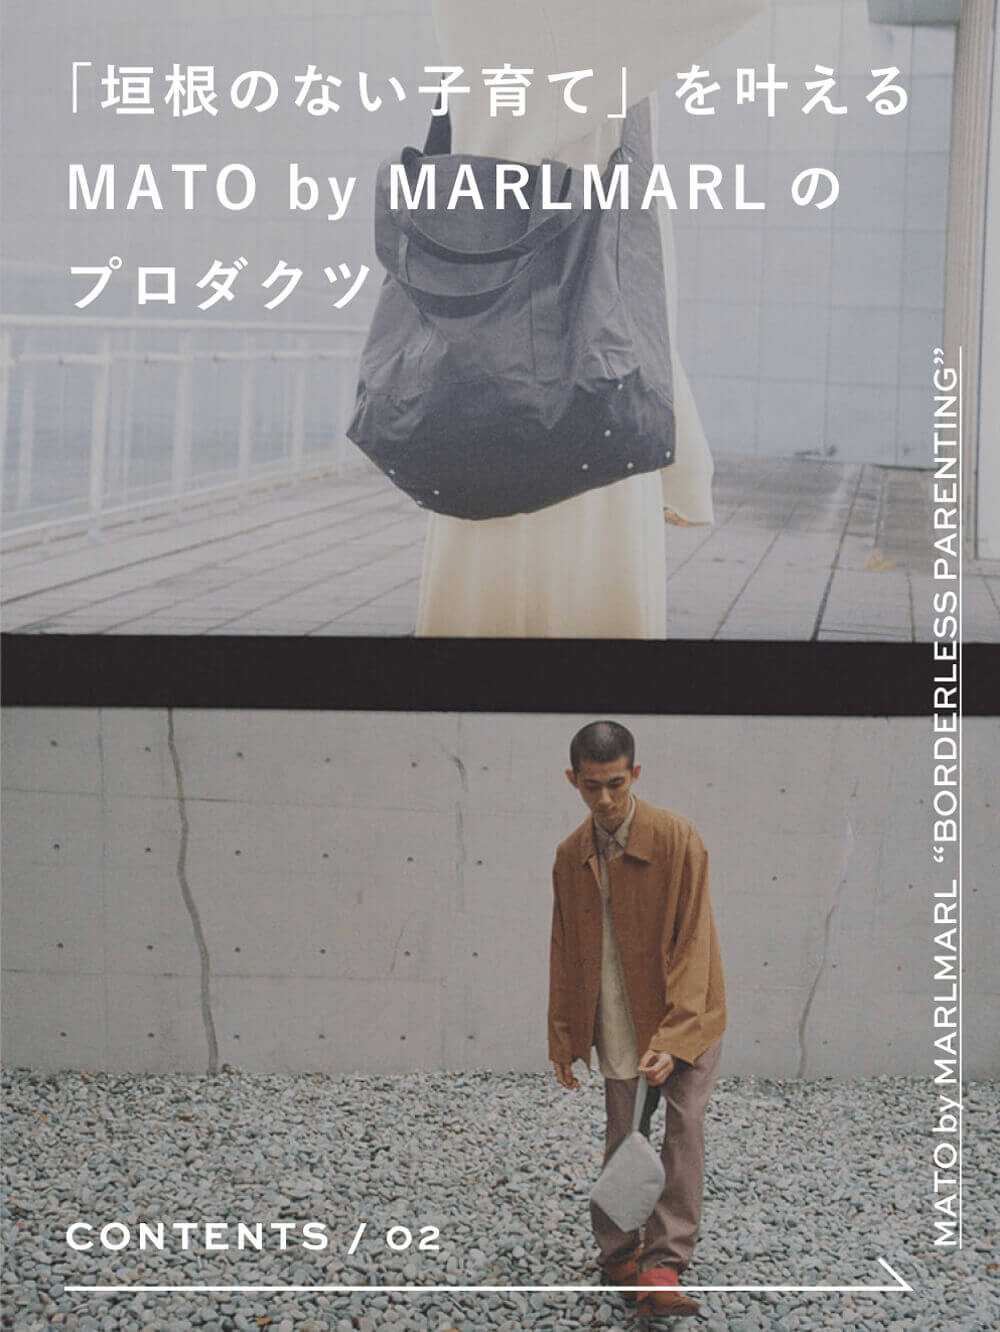 「垣根のない子育て」を叶えるMATO by MARLMARLのプロダクツ | MATO by MARLMARL